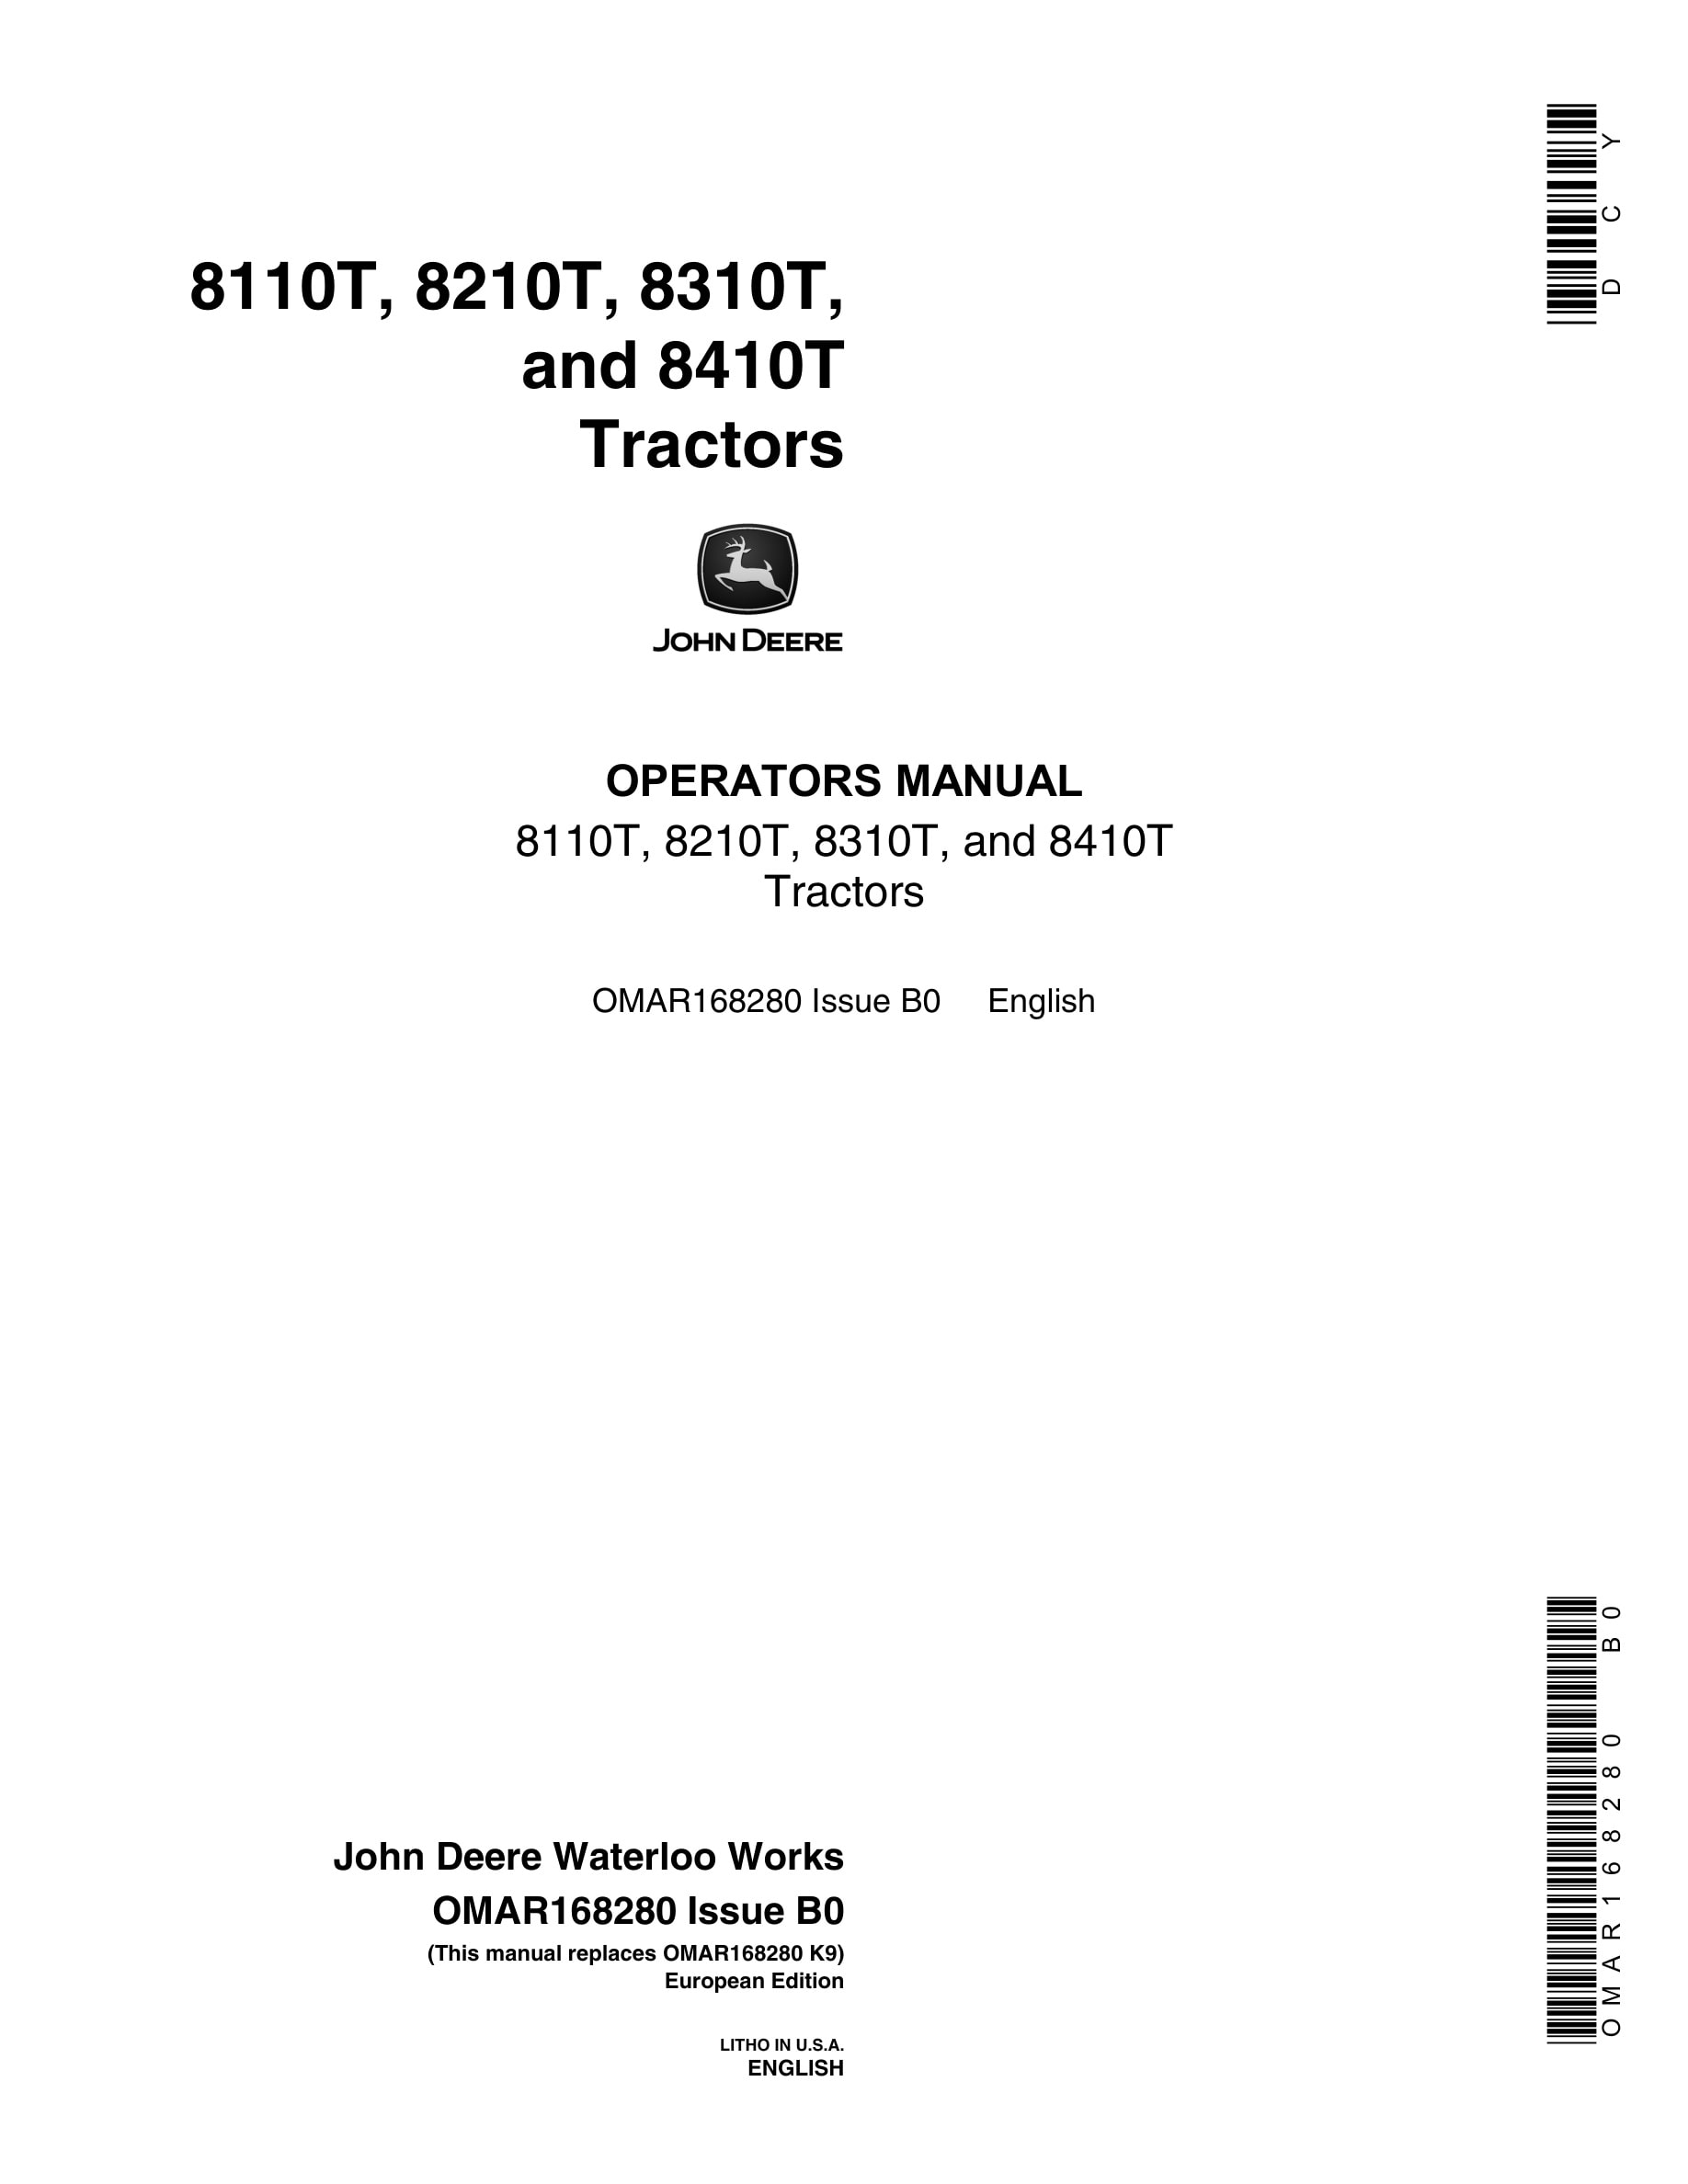 John Deere 8110t, 8210t, 8310t, And 8410t Tractors Operator Manuals OMAR168280-1